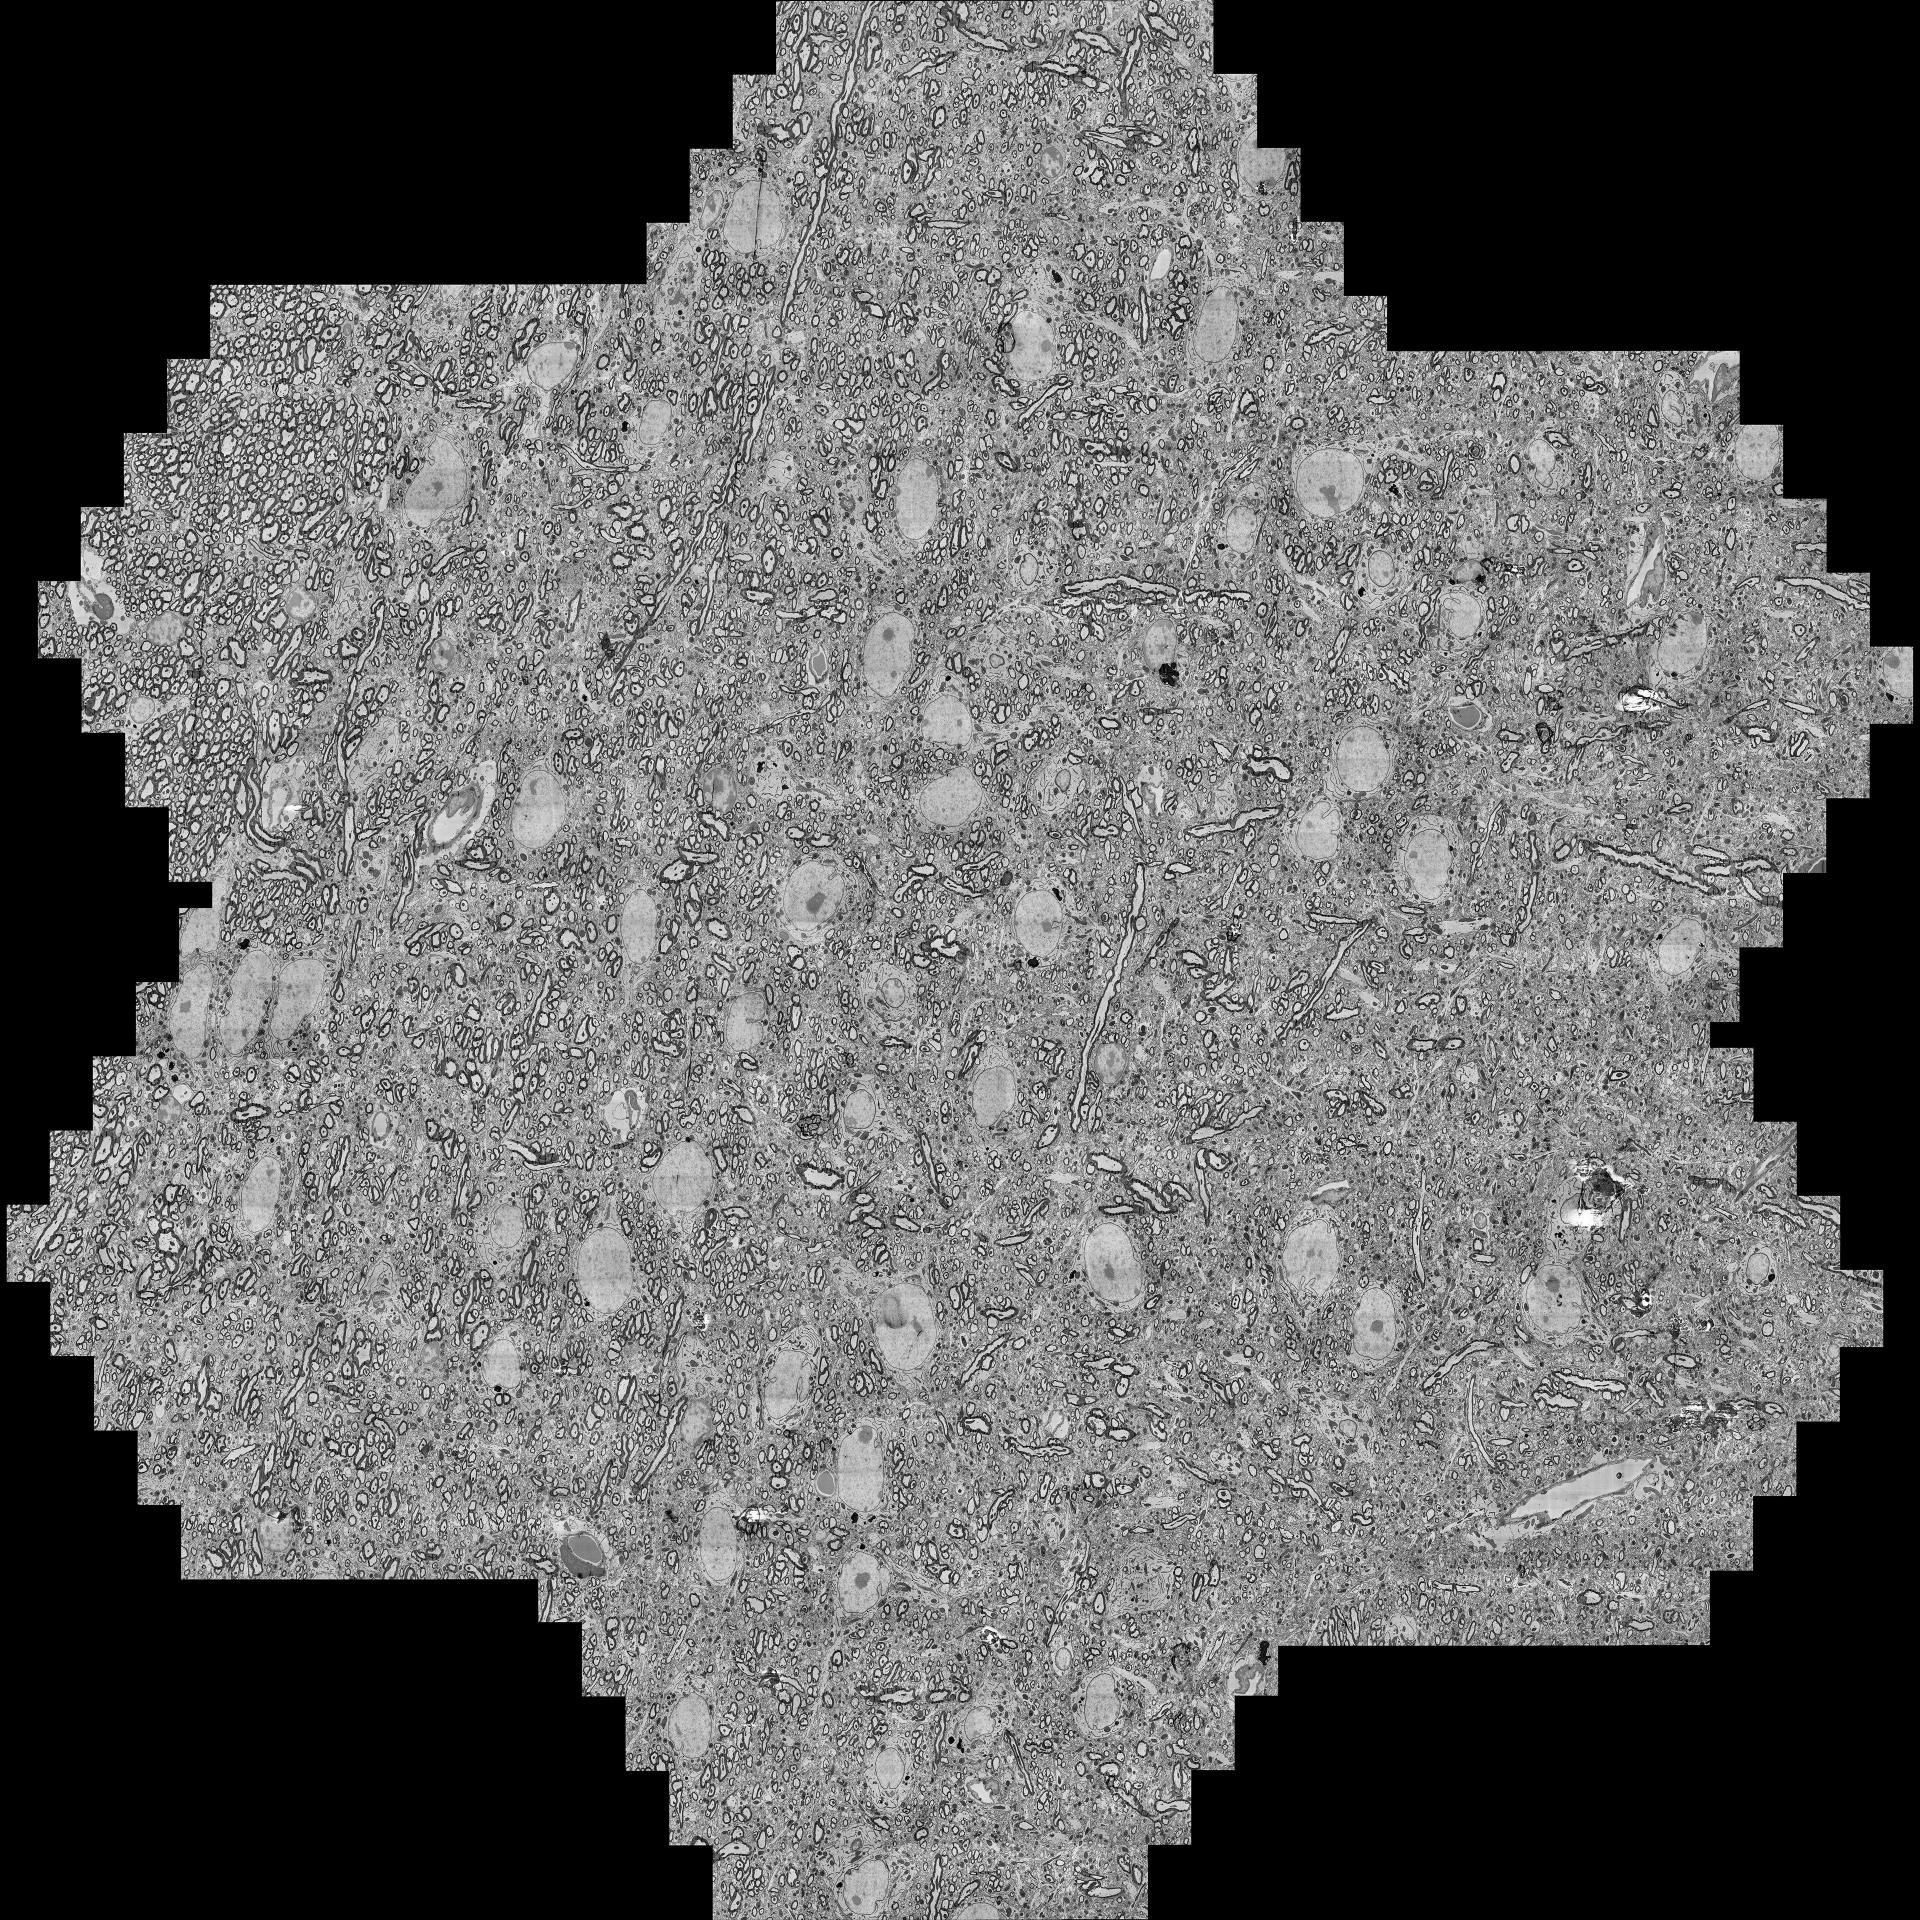 Einzelne hexagonale Multistrahl-Sehfelder (mFoV), zusammengesetzt anhand eines exemplarischen Satzes von sieben mFoV aus dem vorherigen Datensatz. 